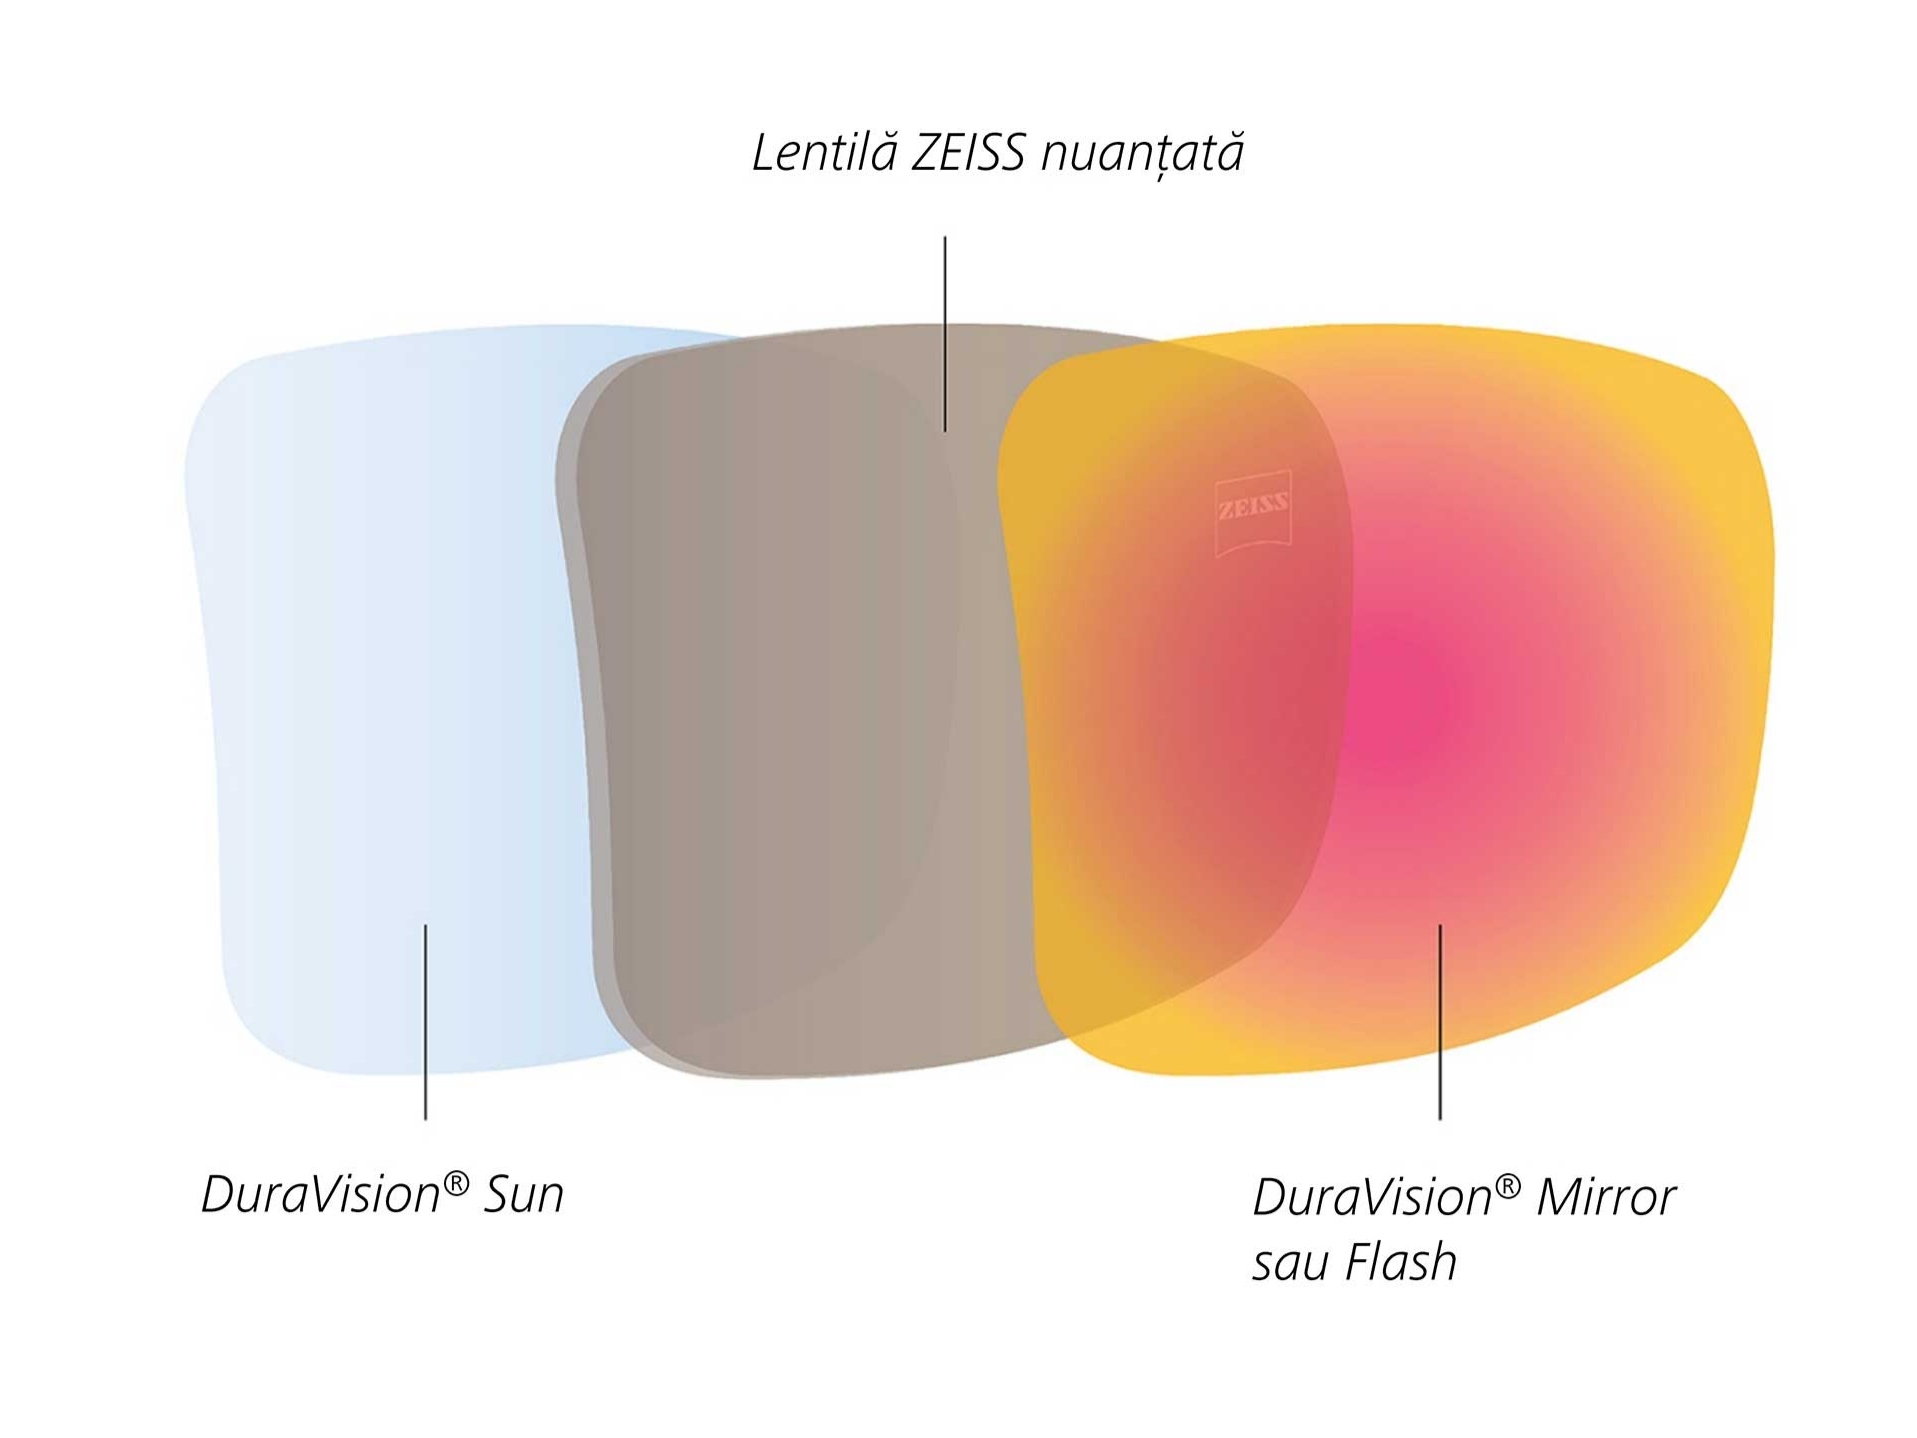 Ilustrație a lentilelor nuanțate ZEISS cu tratamente în partea posterioară și frontală a lentilelor, concepute pentru lumină solară 